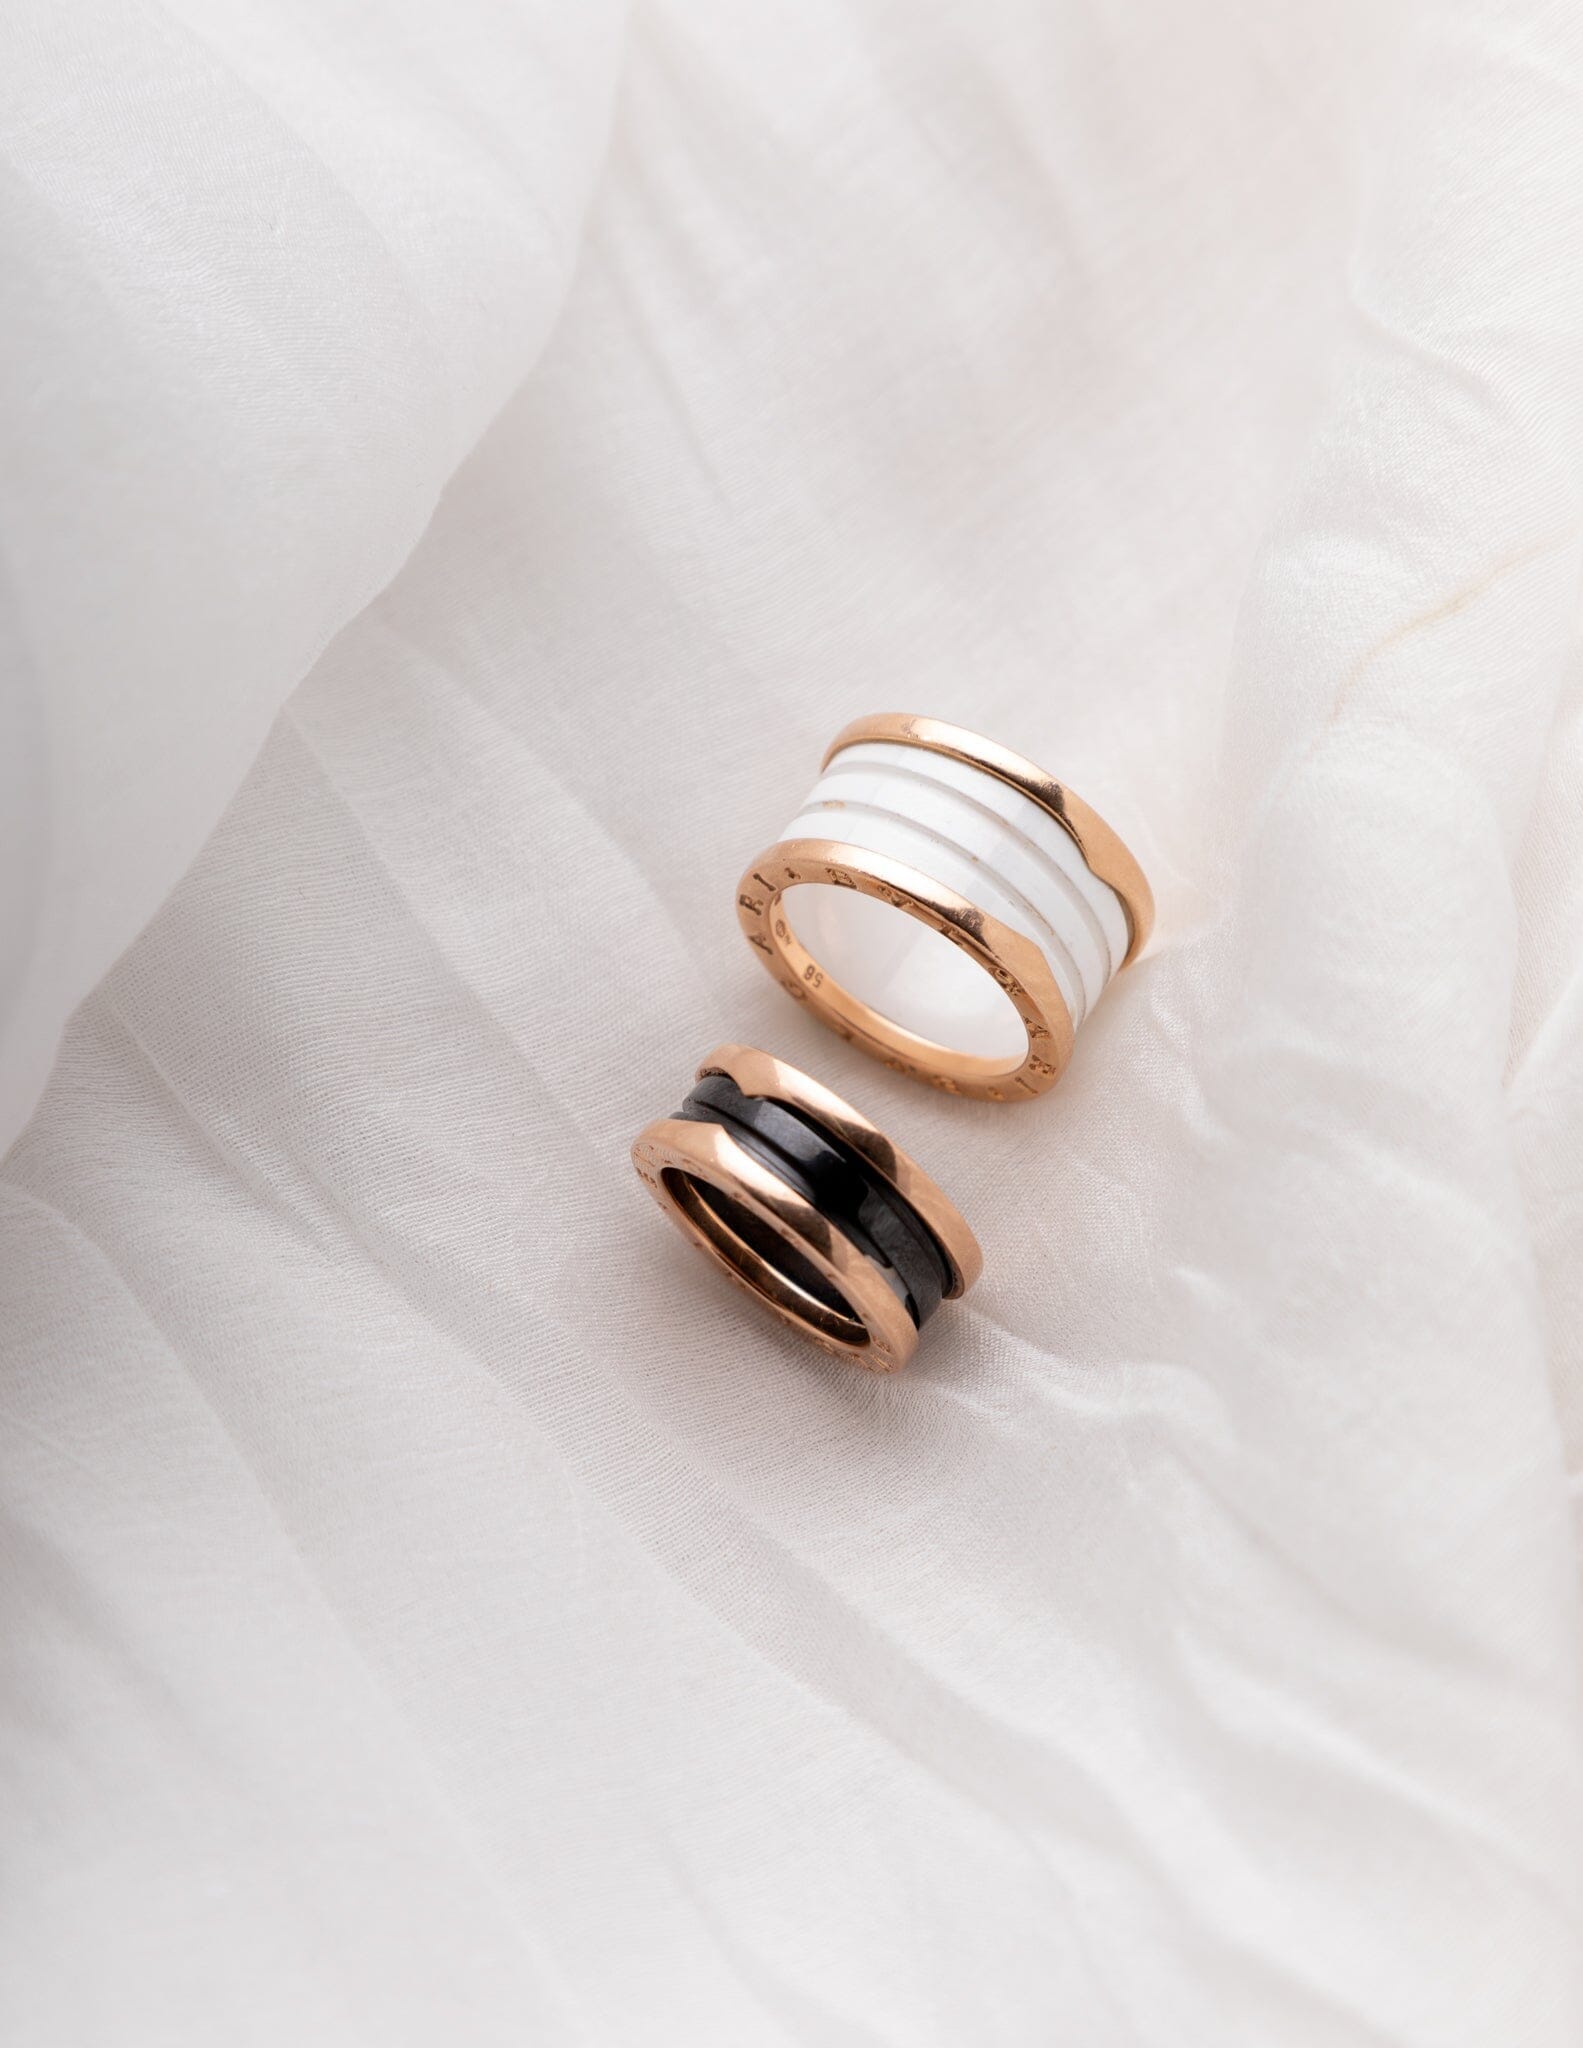 BVLGARI White Signature Ceramic Ring Rings - BONDEYE JEWELRY ®